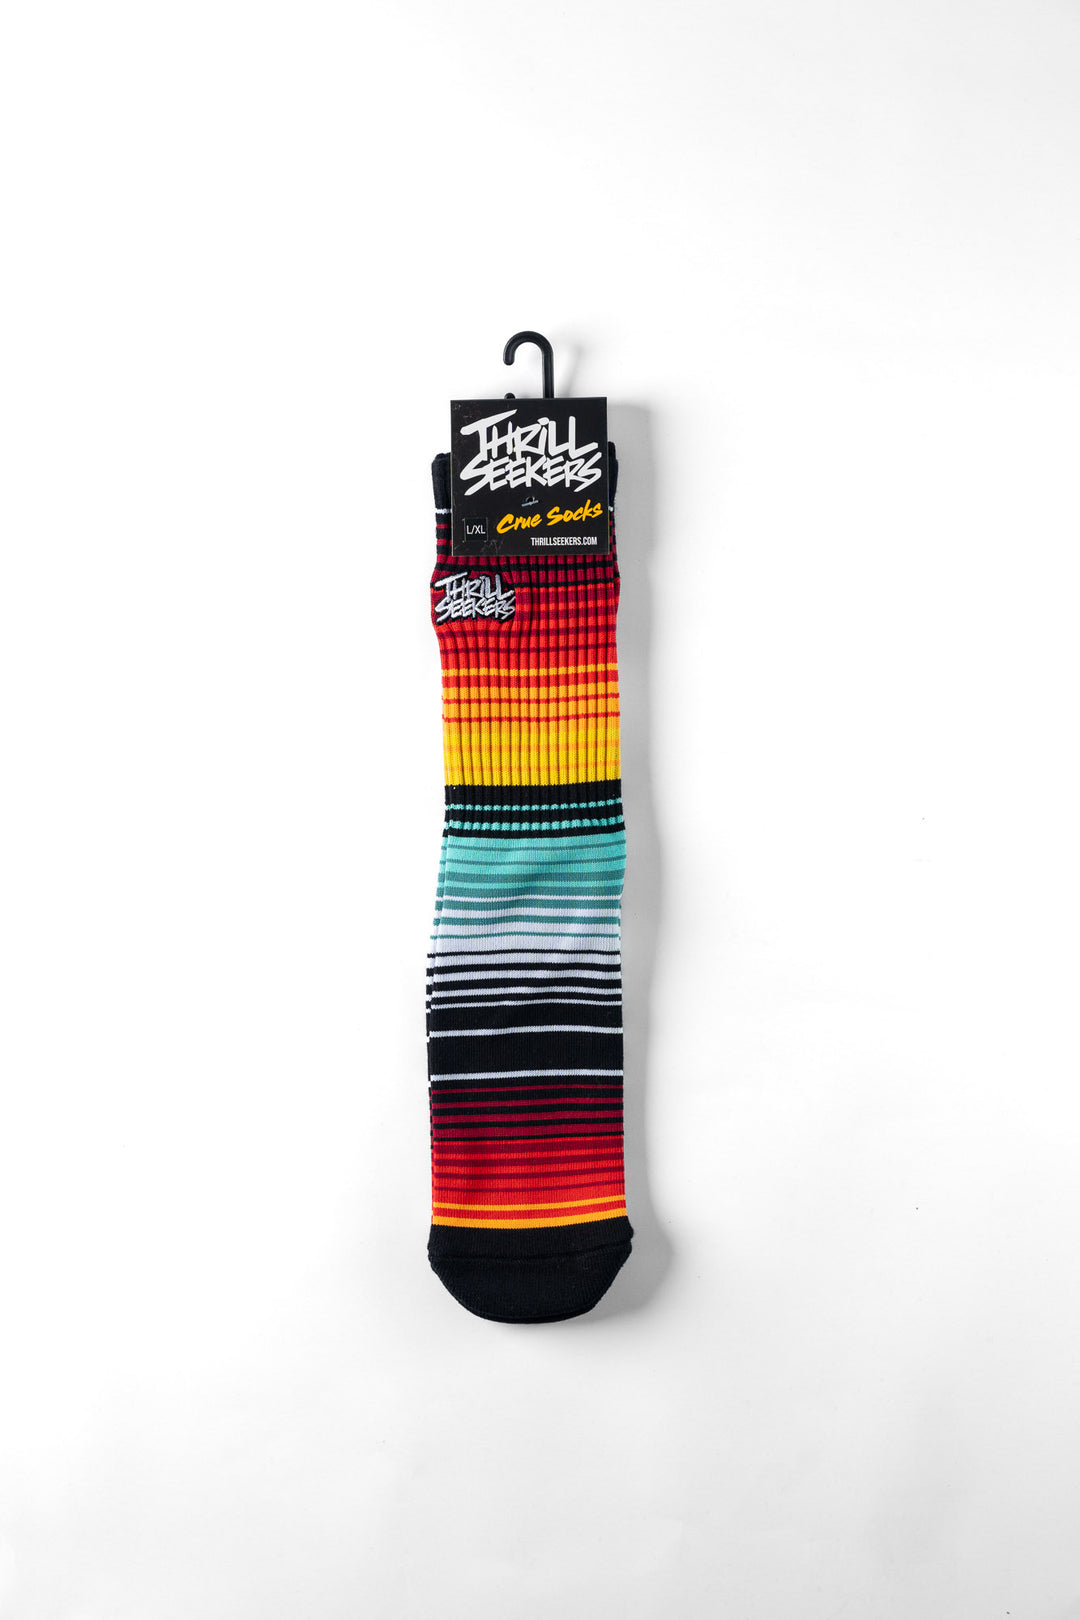 Thrill Seekers Baja Socks